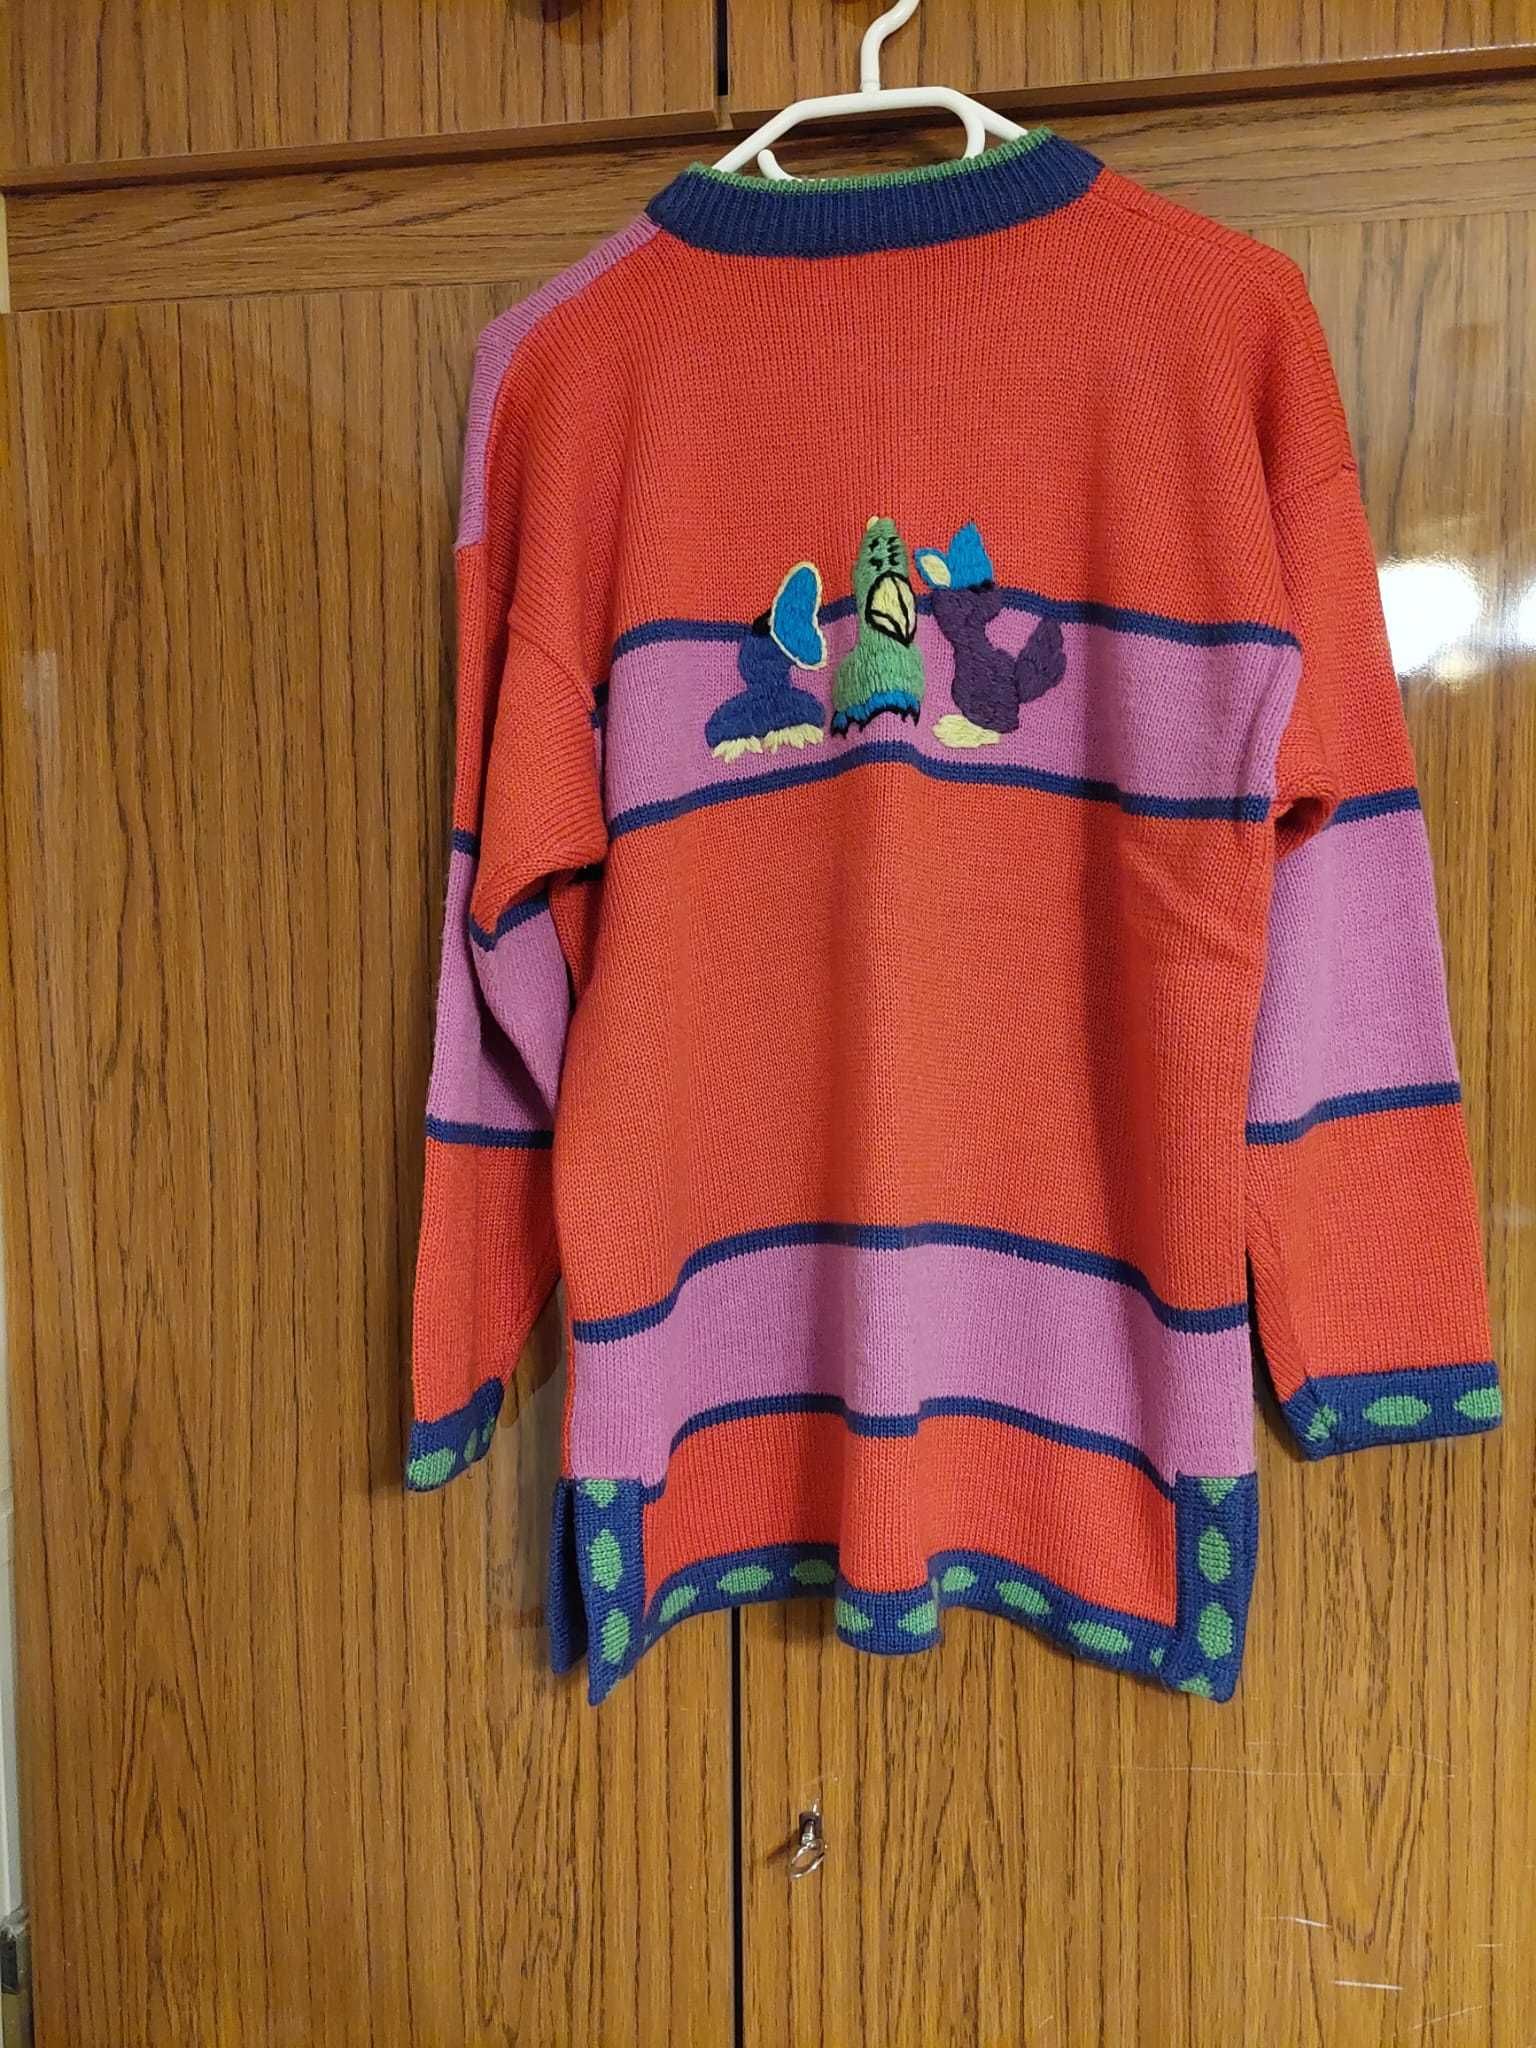 Bardzo fajny sweterek, bardzo oryginalny.